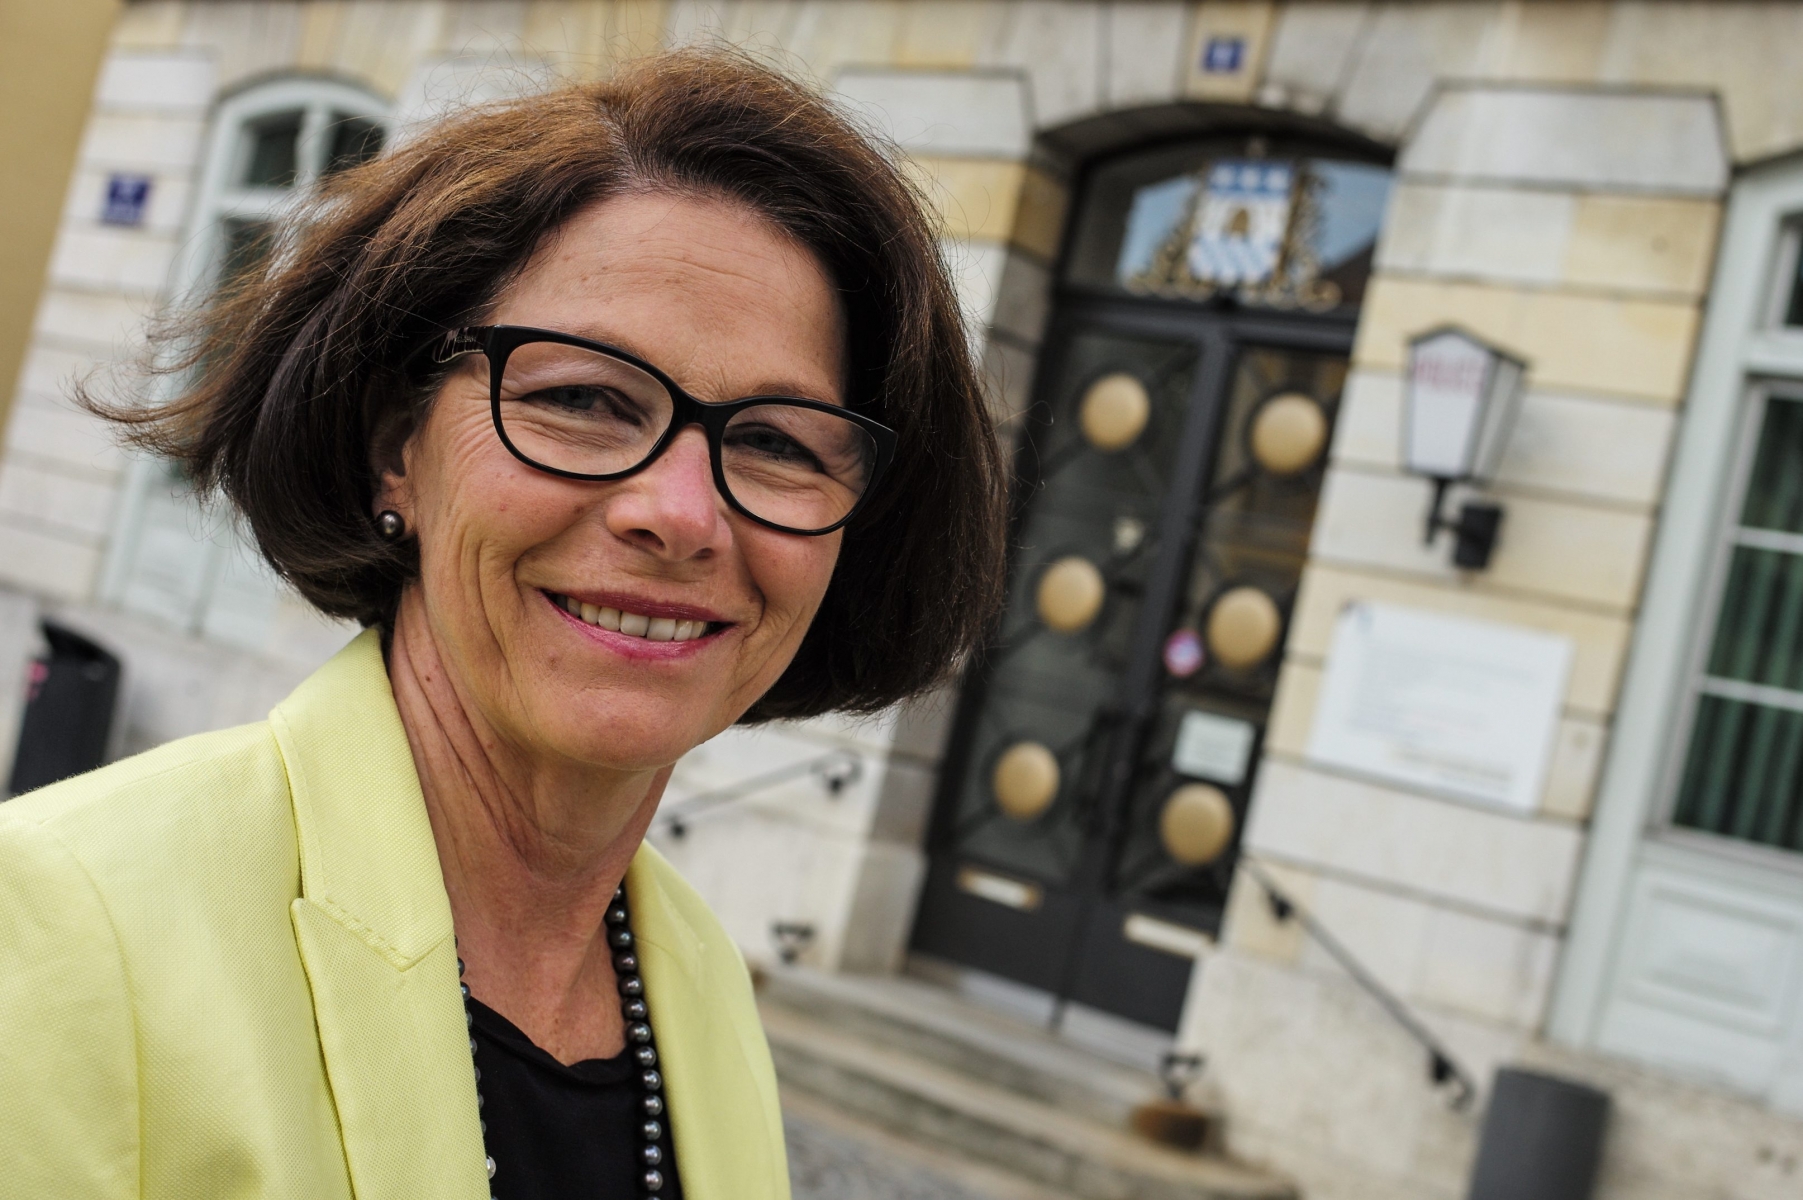 La PLR Sylvia Morel succède à Pierre-André Monnard au Conseil communal de La Chaux-de-Fonds.

LA CHAUX-DE-FONDS
30 05 2014
PHOTO: CHRISTIAN GALLEY